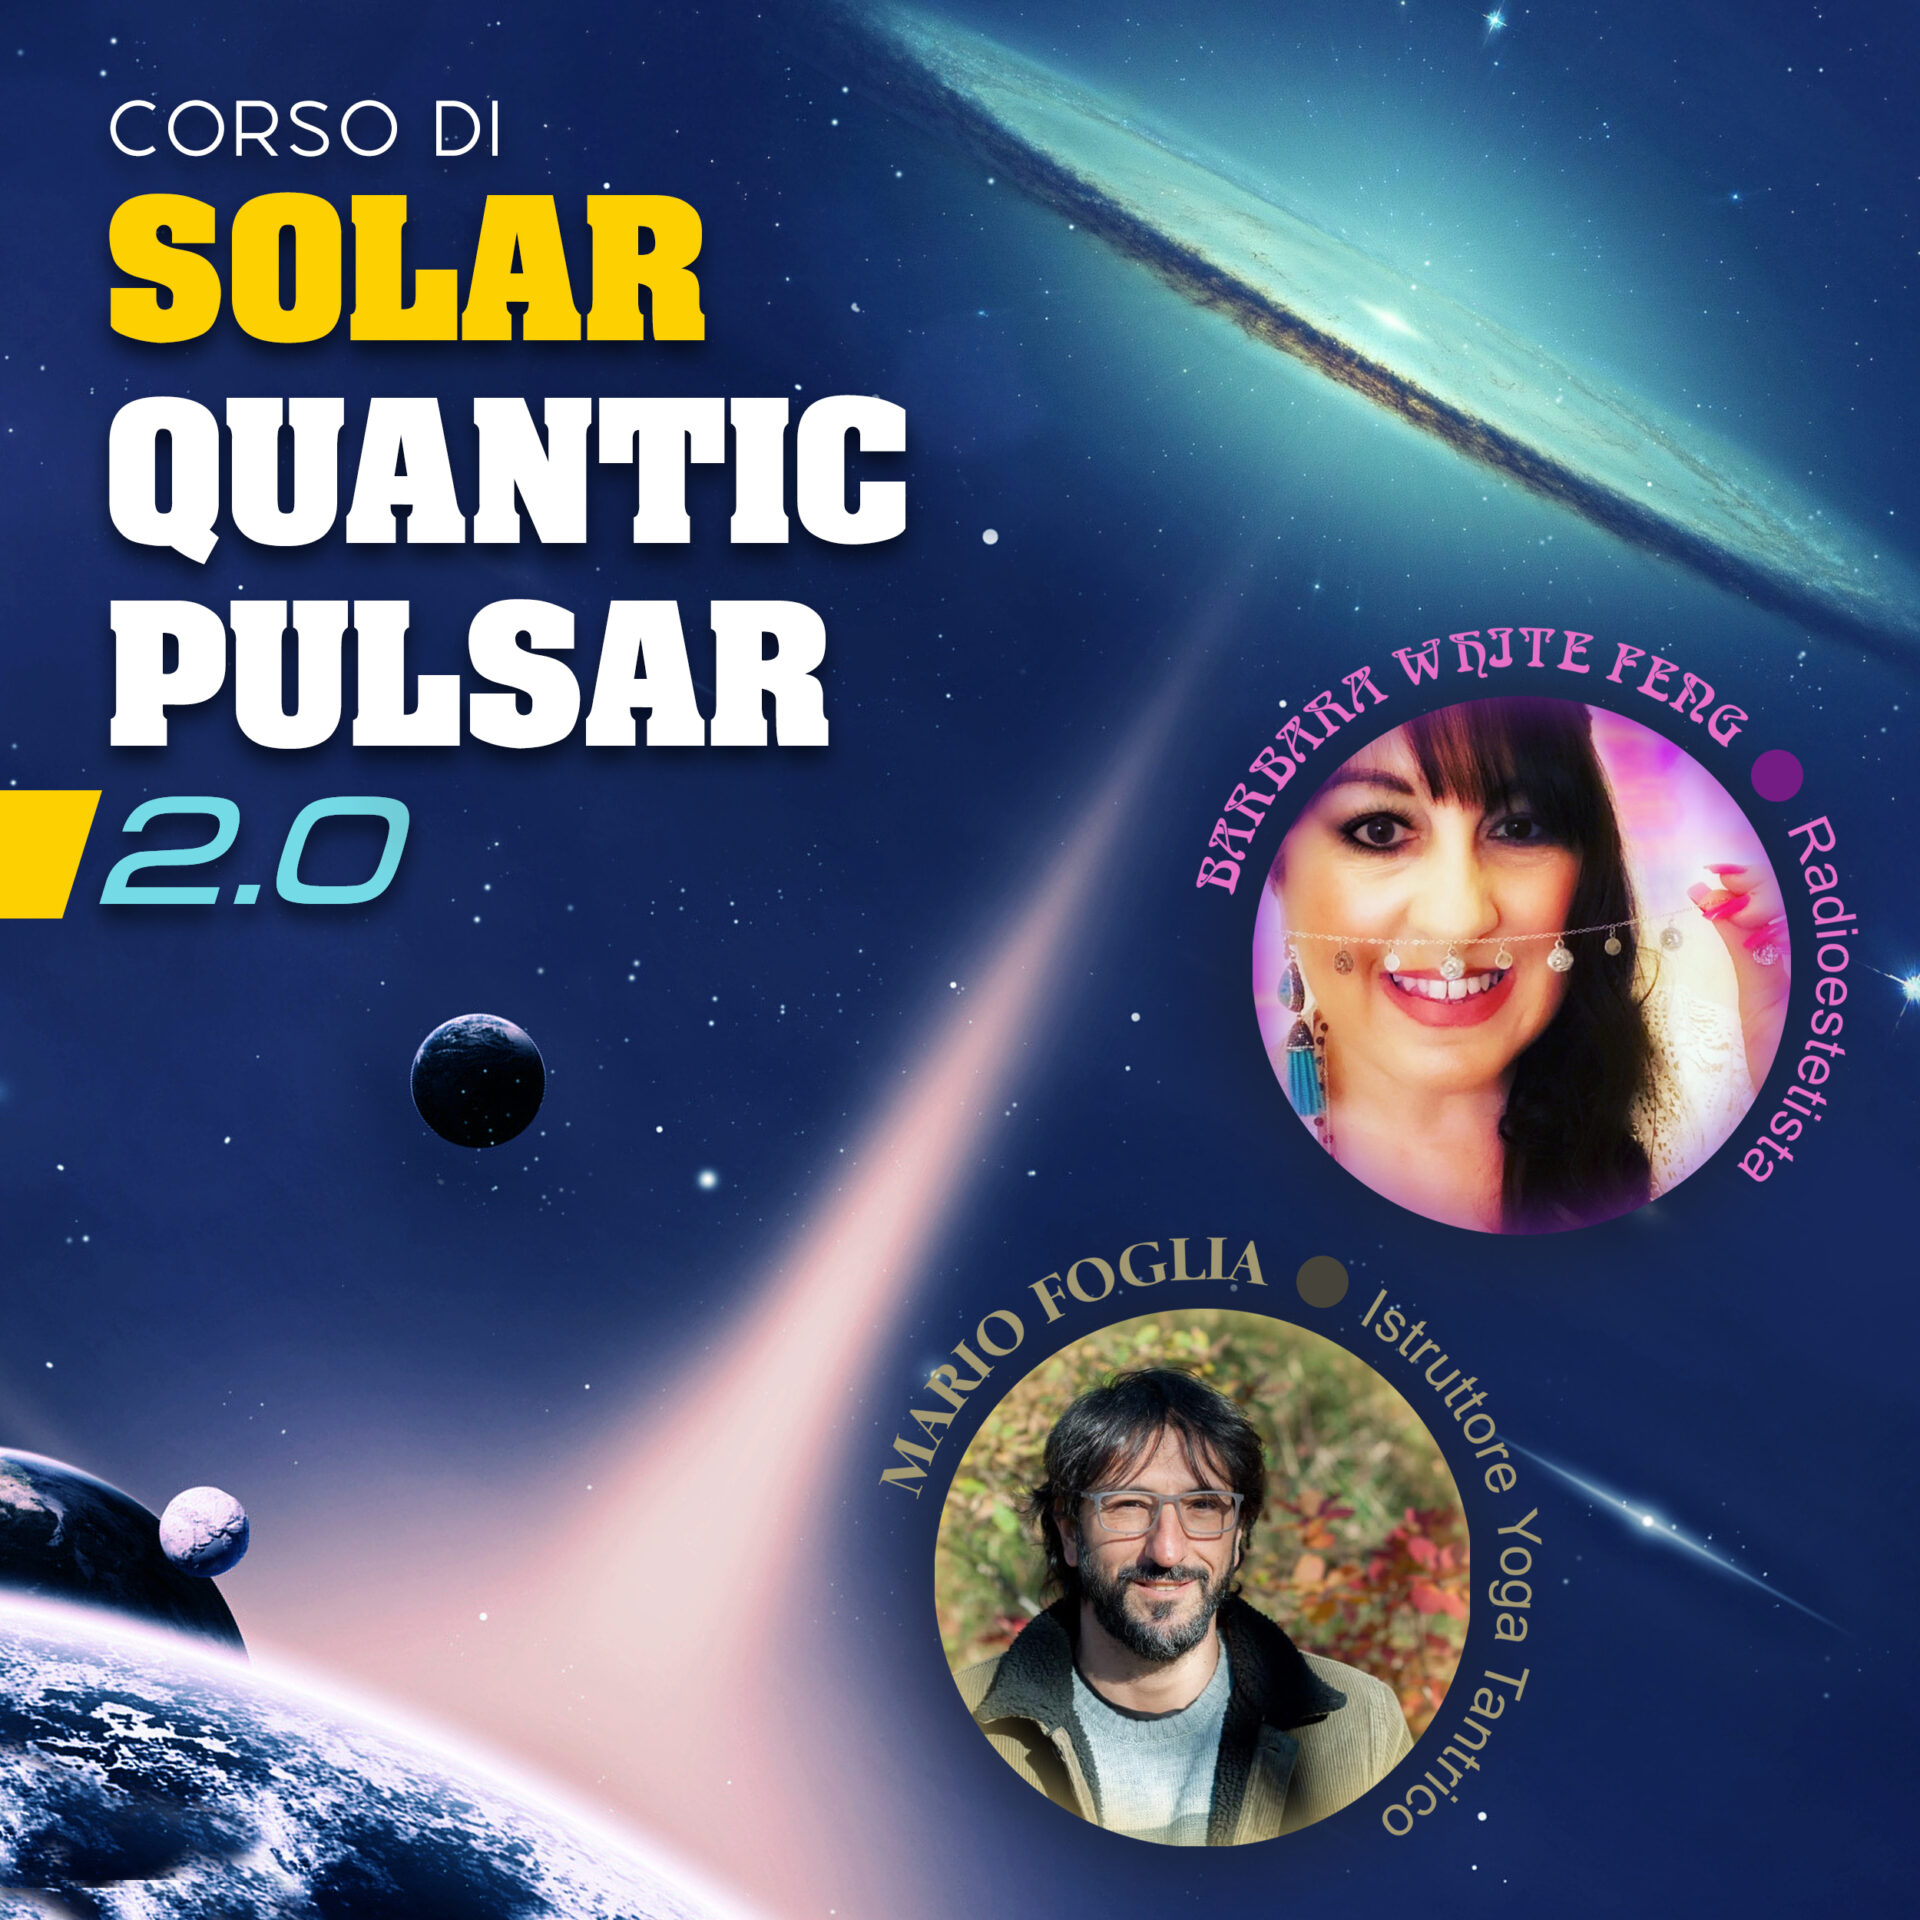 Corso Solar Quantic Pulsar 2.0